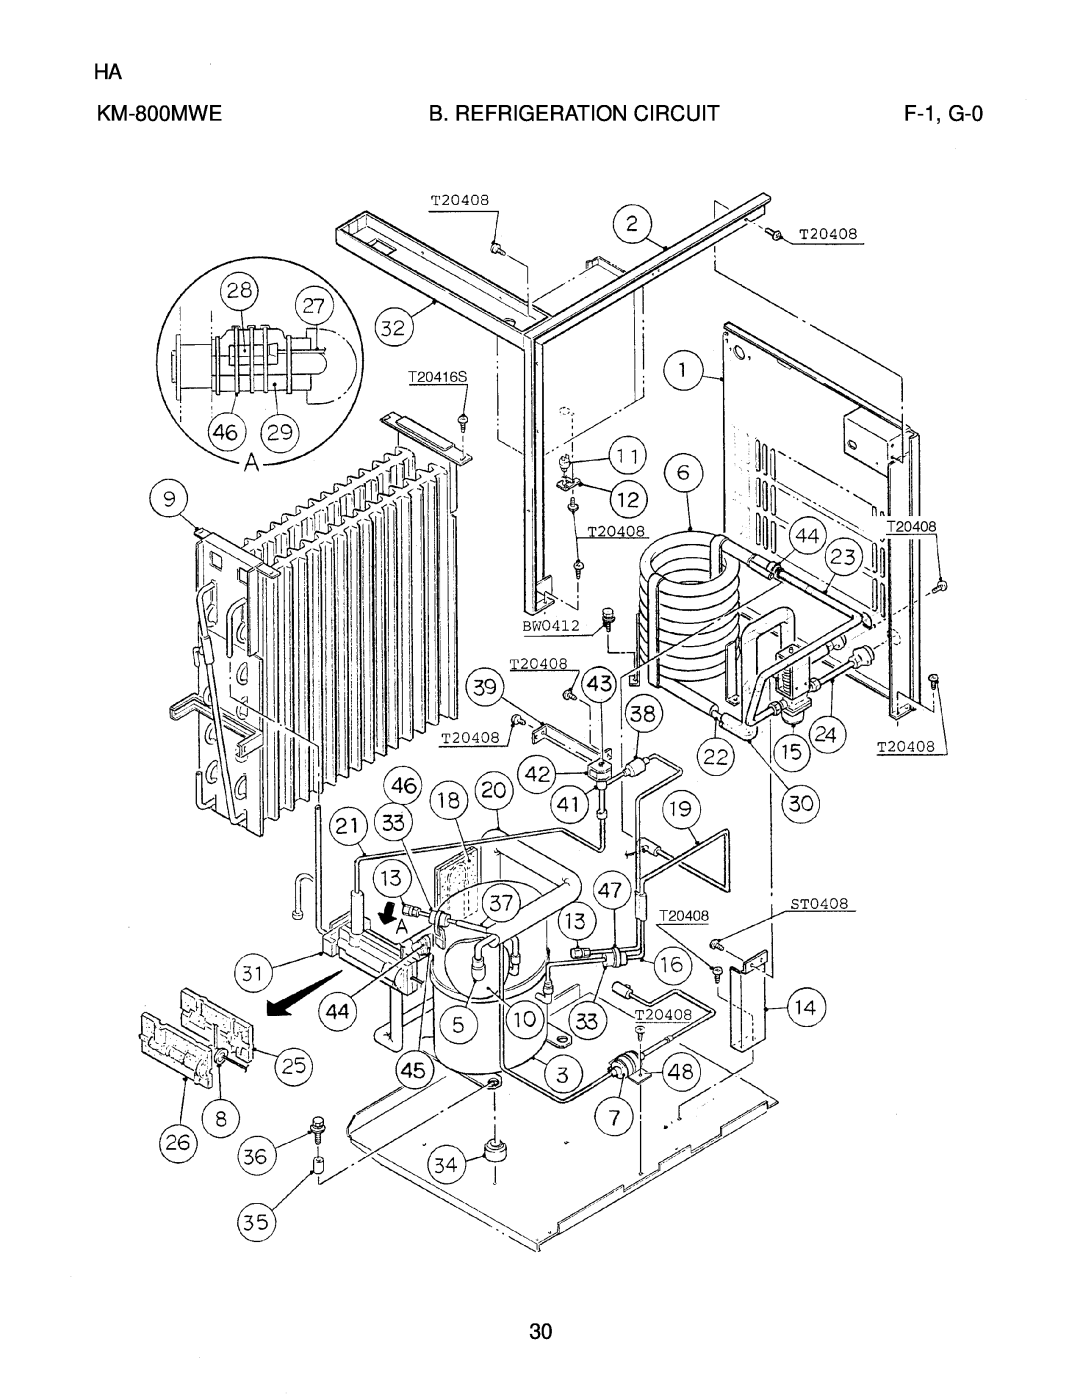 Hoshizaki KM-800MWE, KM-800MAE, KM-800MRE manual B. Refrigeration Circuit, F-1, G-0 